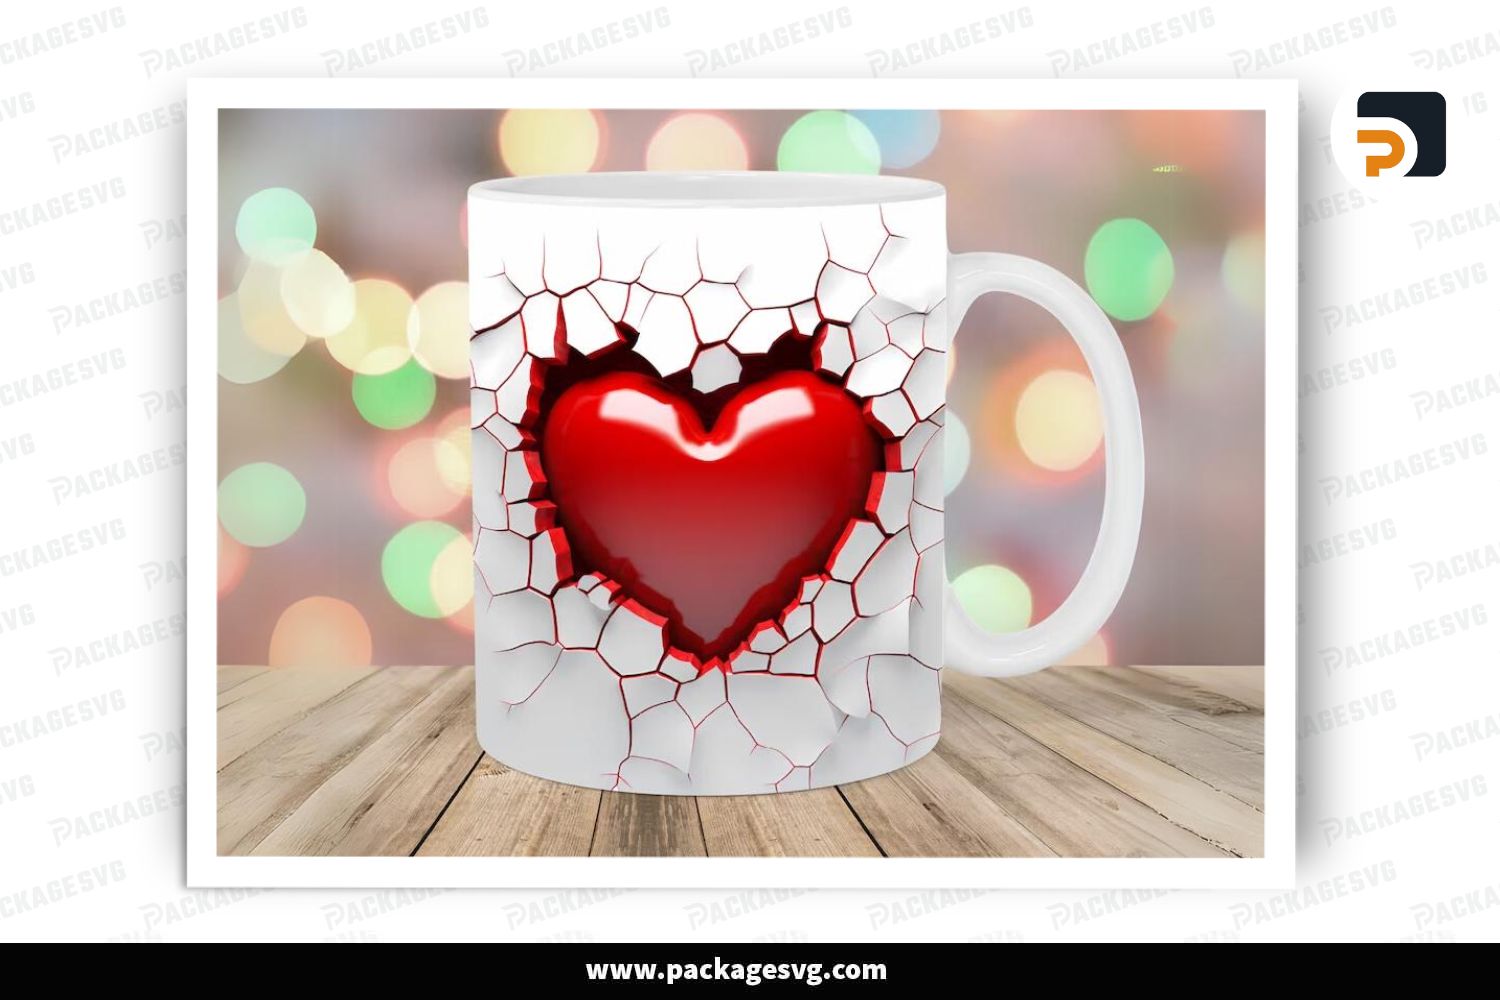 Valentines mug sublimation 11 oz